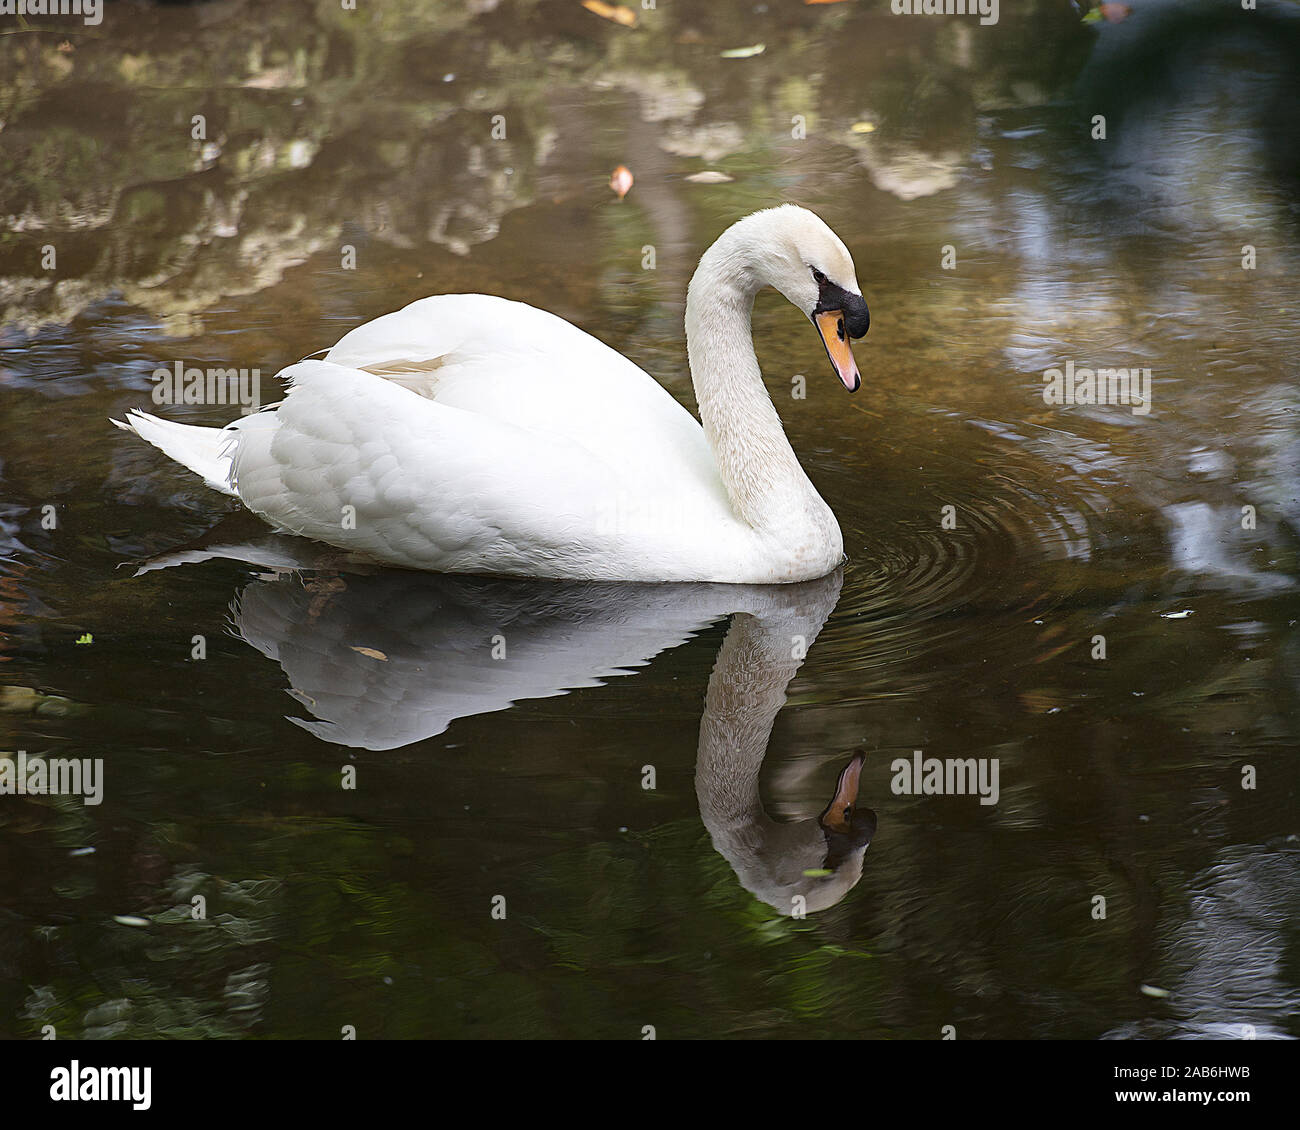 White Swan Vogel im Wasser seinen Körper, Kopf, Schnabel aussetzen, Auge, Flügeln, die mit einer Reflexion. Stockfoto